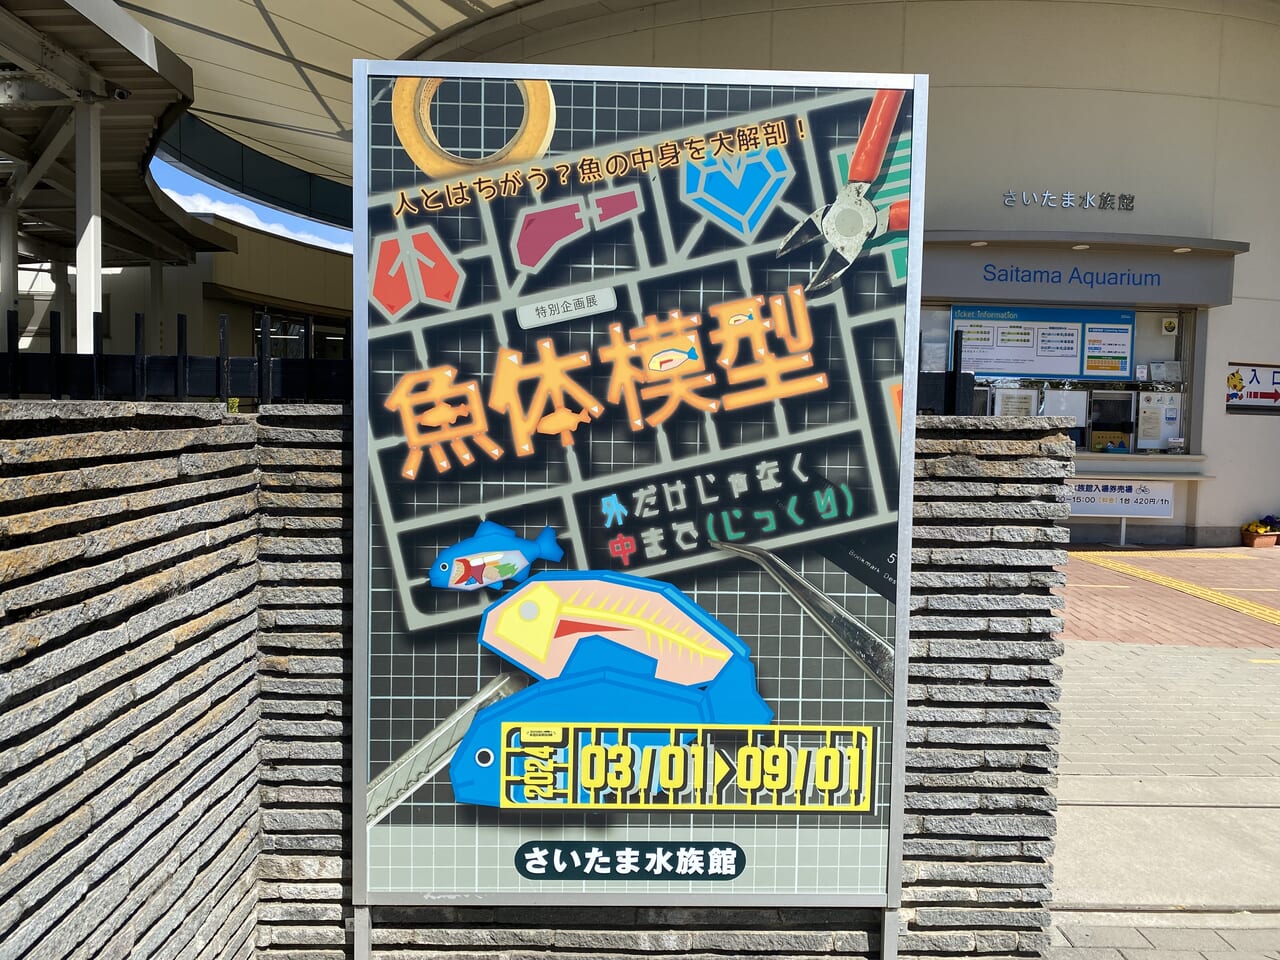 さいたま水族館の特別企画展「魚体模型～外だけじゃなく中までじっくり～」のポスター